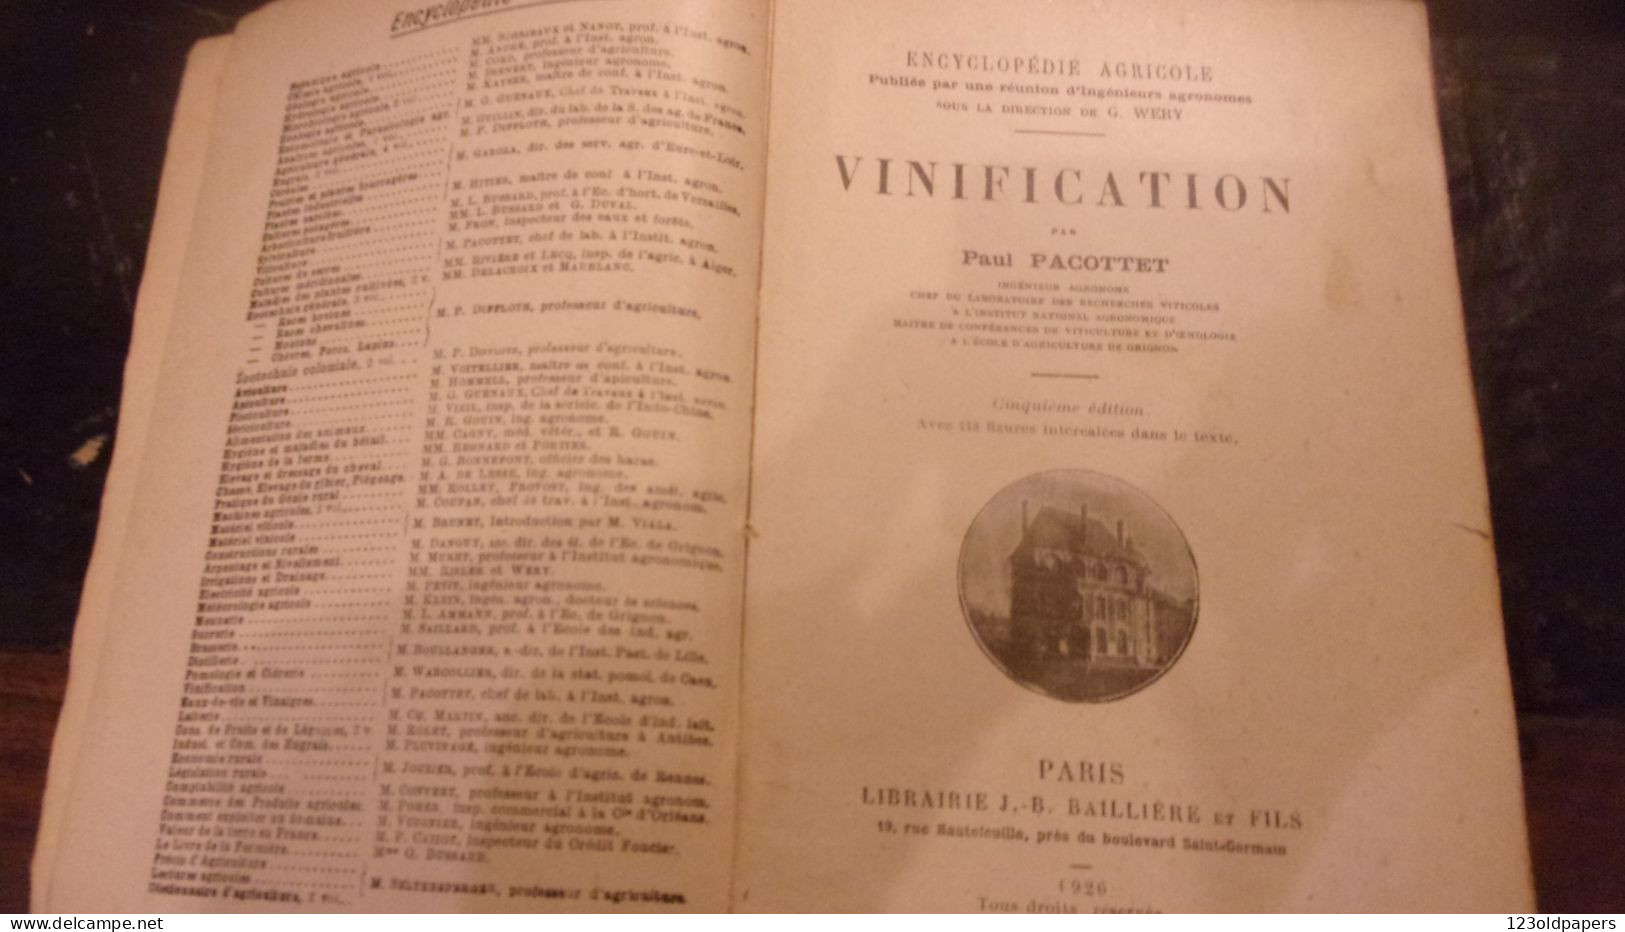 Vinification PACOTTET Paul 1926 ENCYCLOPEDIE AGRICOLE 463 P 118 Figures Et Photographies OENOLOGIE VIN VIGNE - Jardinage